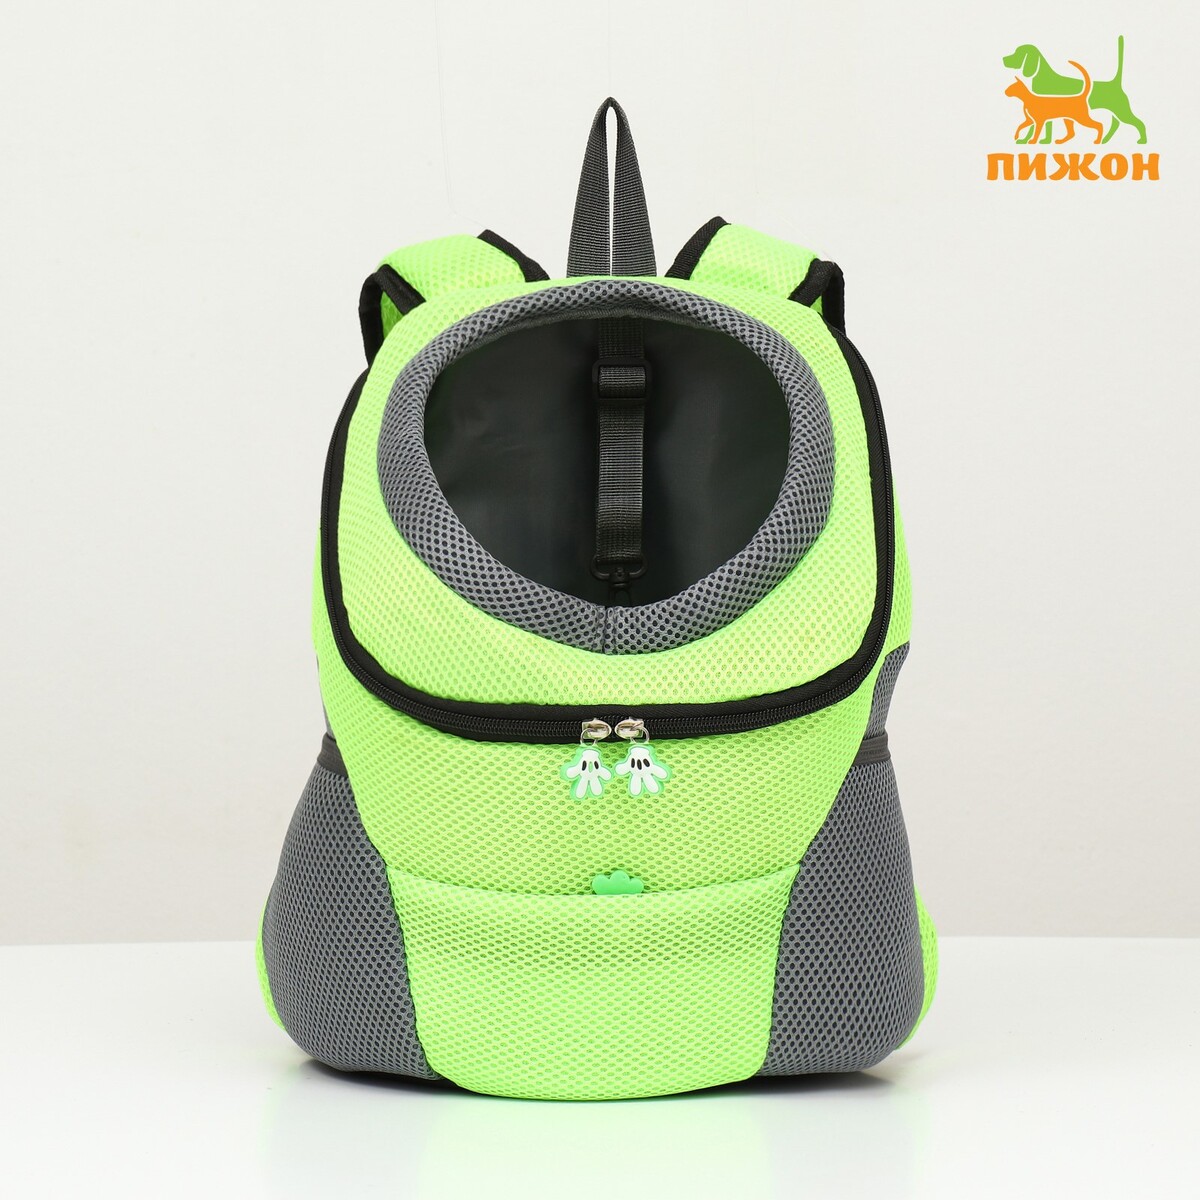 Рюкзак-переноска для животных, максимальный вес 10 кг, 30 х 16 х 34 см, зеленый рюкзак для переноски животных прозрачный 31 х 28 х 42 см зеленый